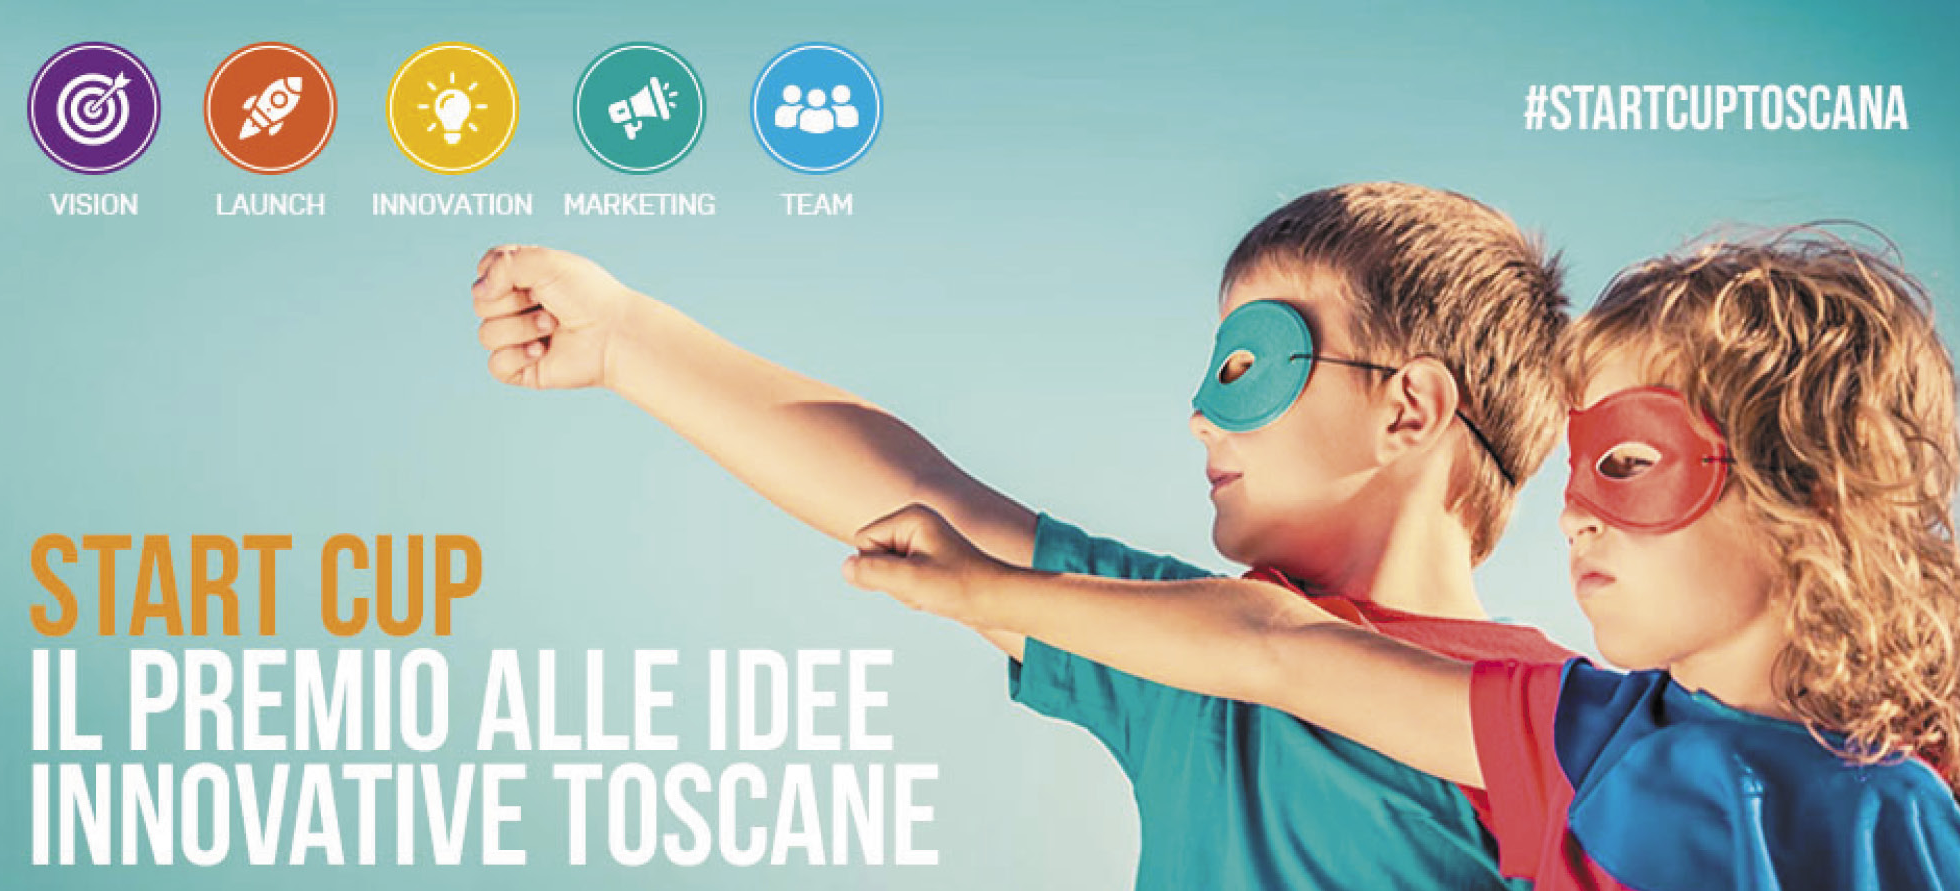 Start Cup Toscana, il 16 ottobre la finalissima per premiare le migliori idee innovative